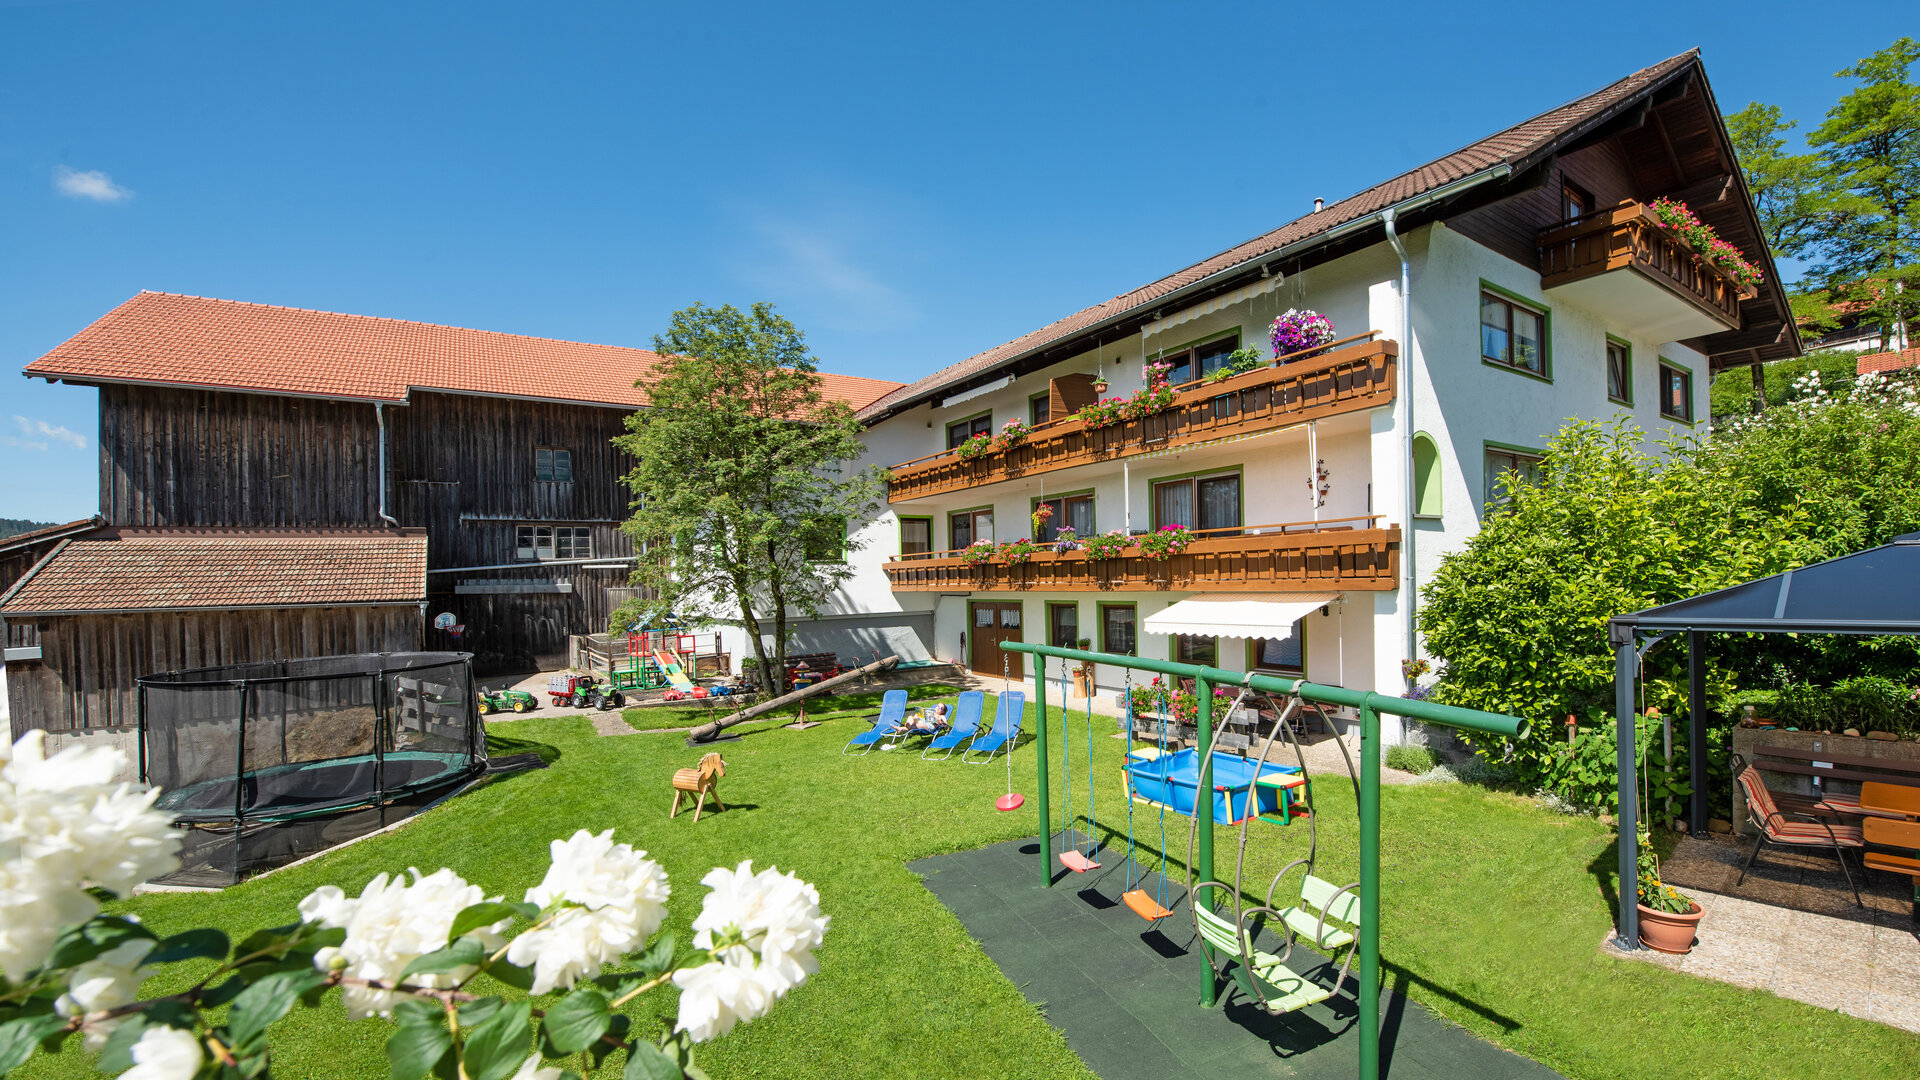 Gästehaus Kress in Inzell